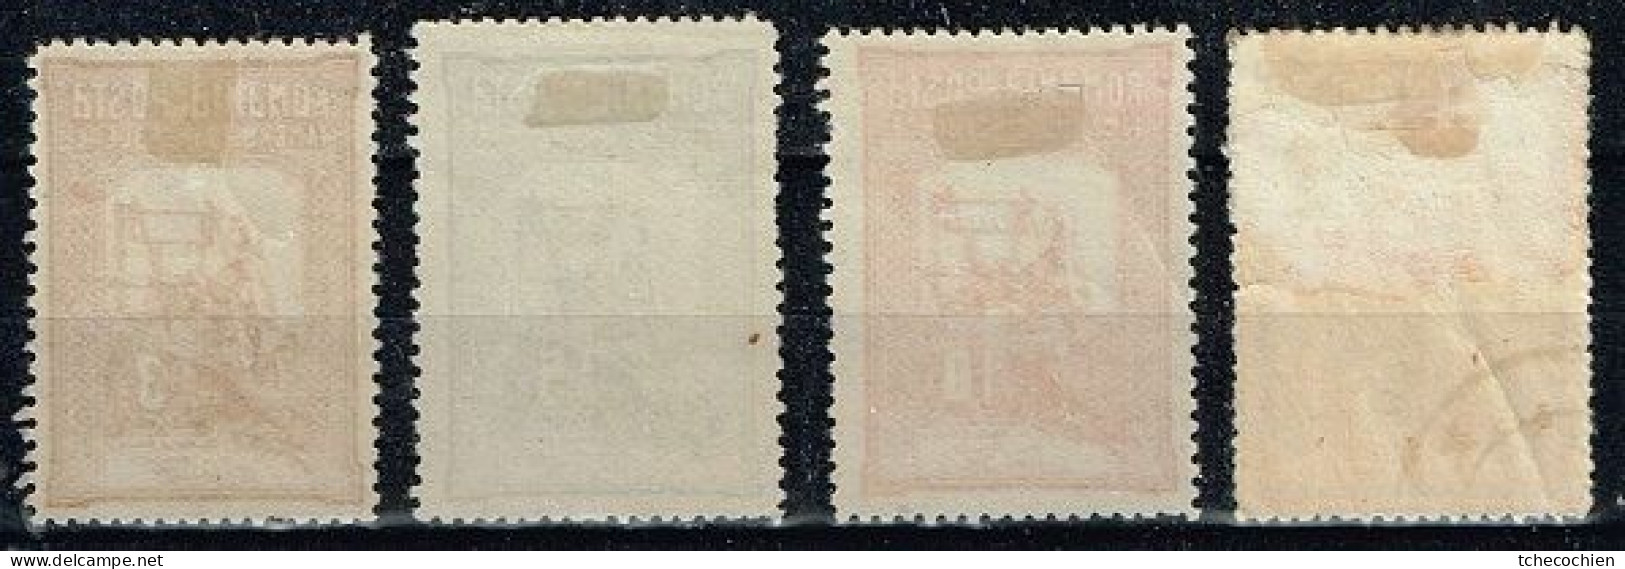 Roumanie - 1905 - Y&T - N° 164 à 167, Neufs Avec Adhérences Au Dos - Unused Stamps